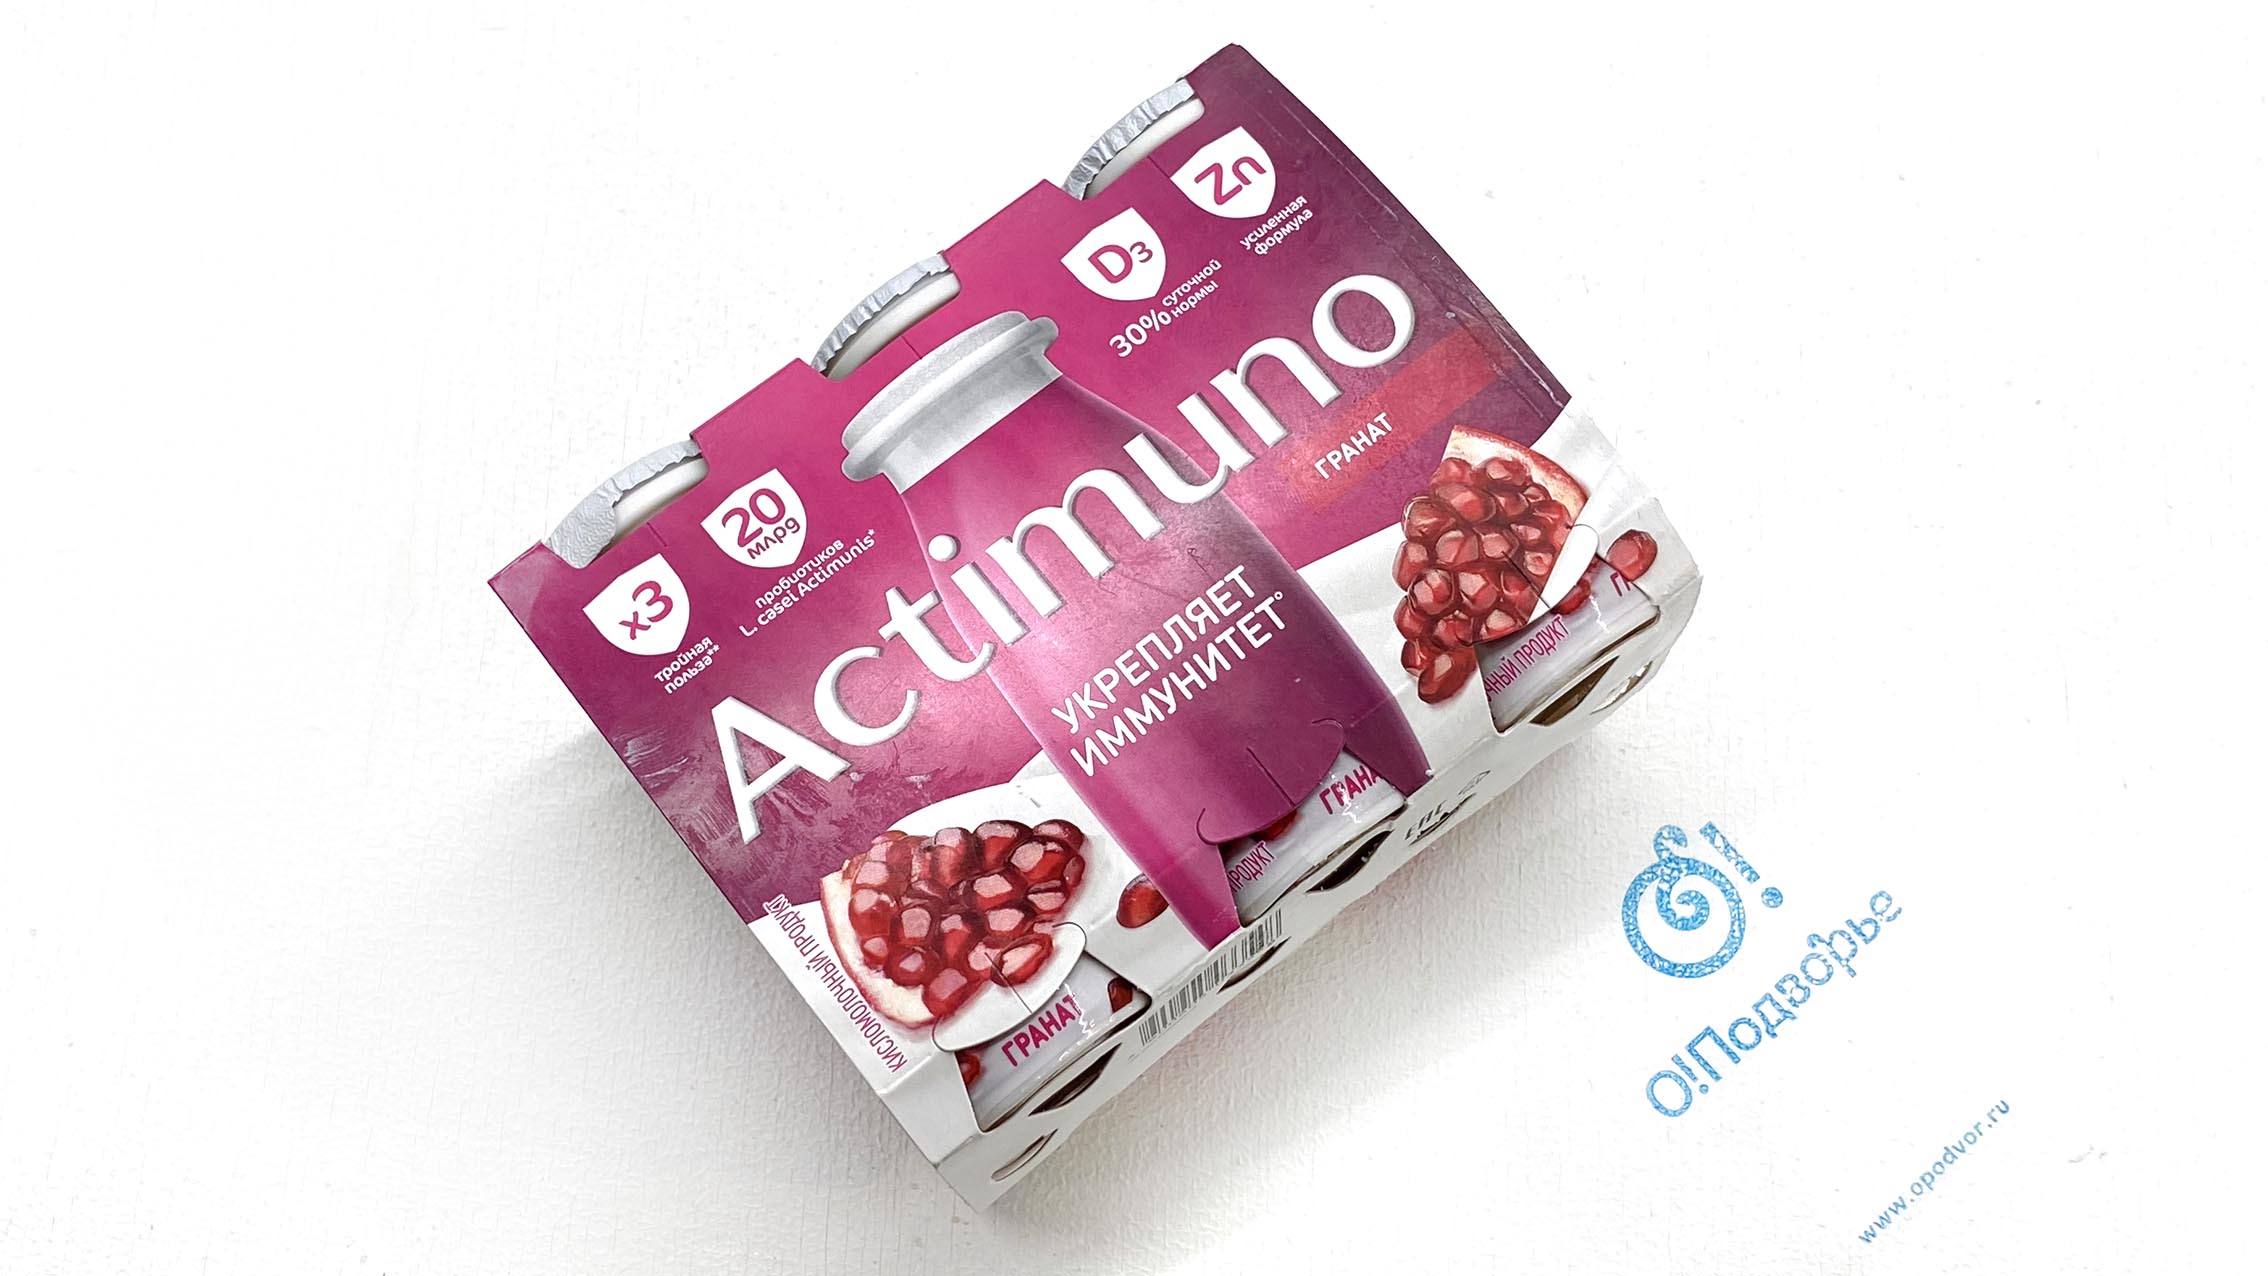 Actimuno, кисломолочный продукт, обогащенный лактобактериями L, Casel и витаминами В6 и D3, с гранатом и цинком, 1,5%, 570 грамм- 6 шт. х 95 гр., (Зл)